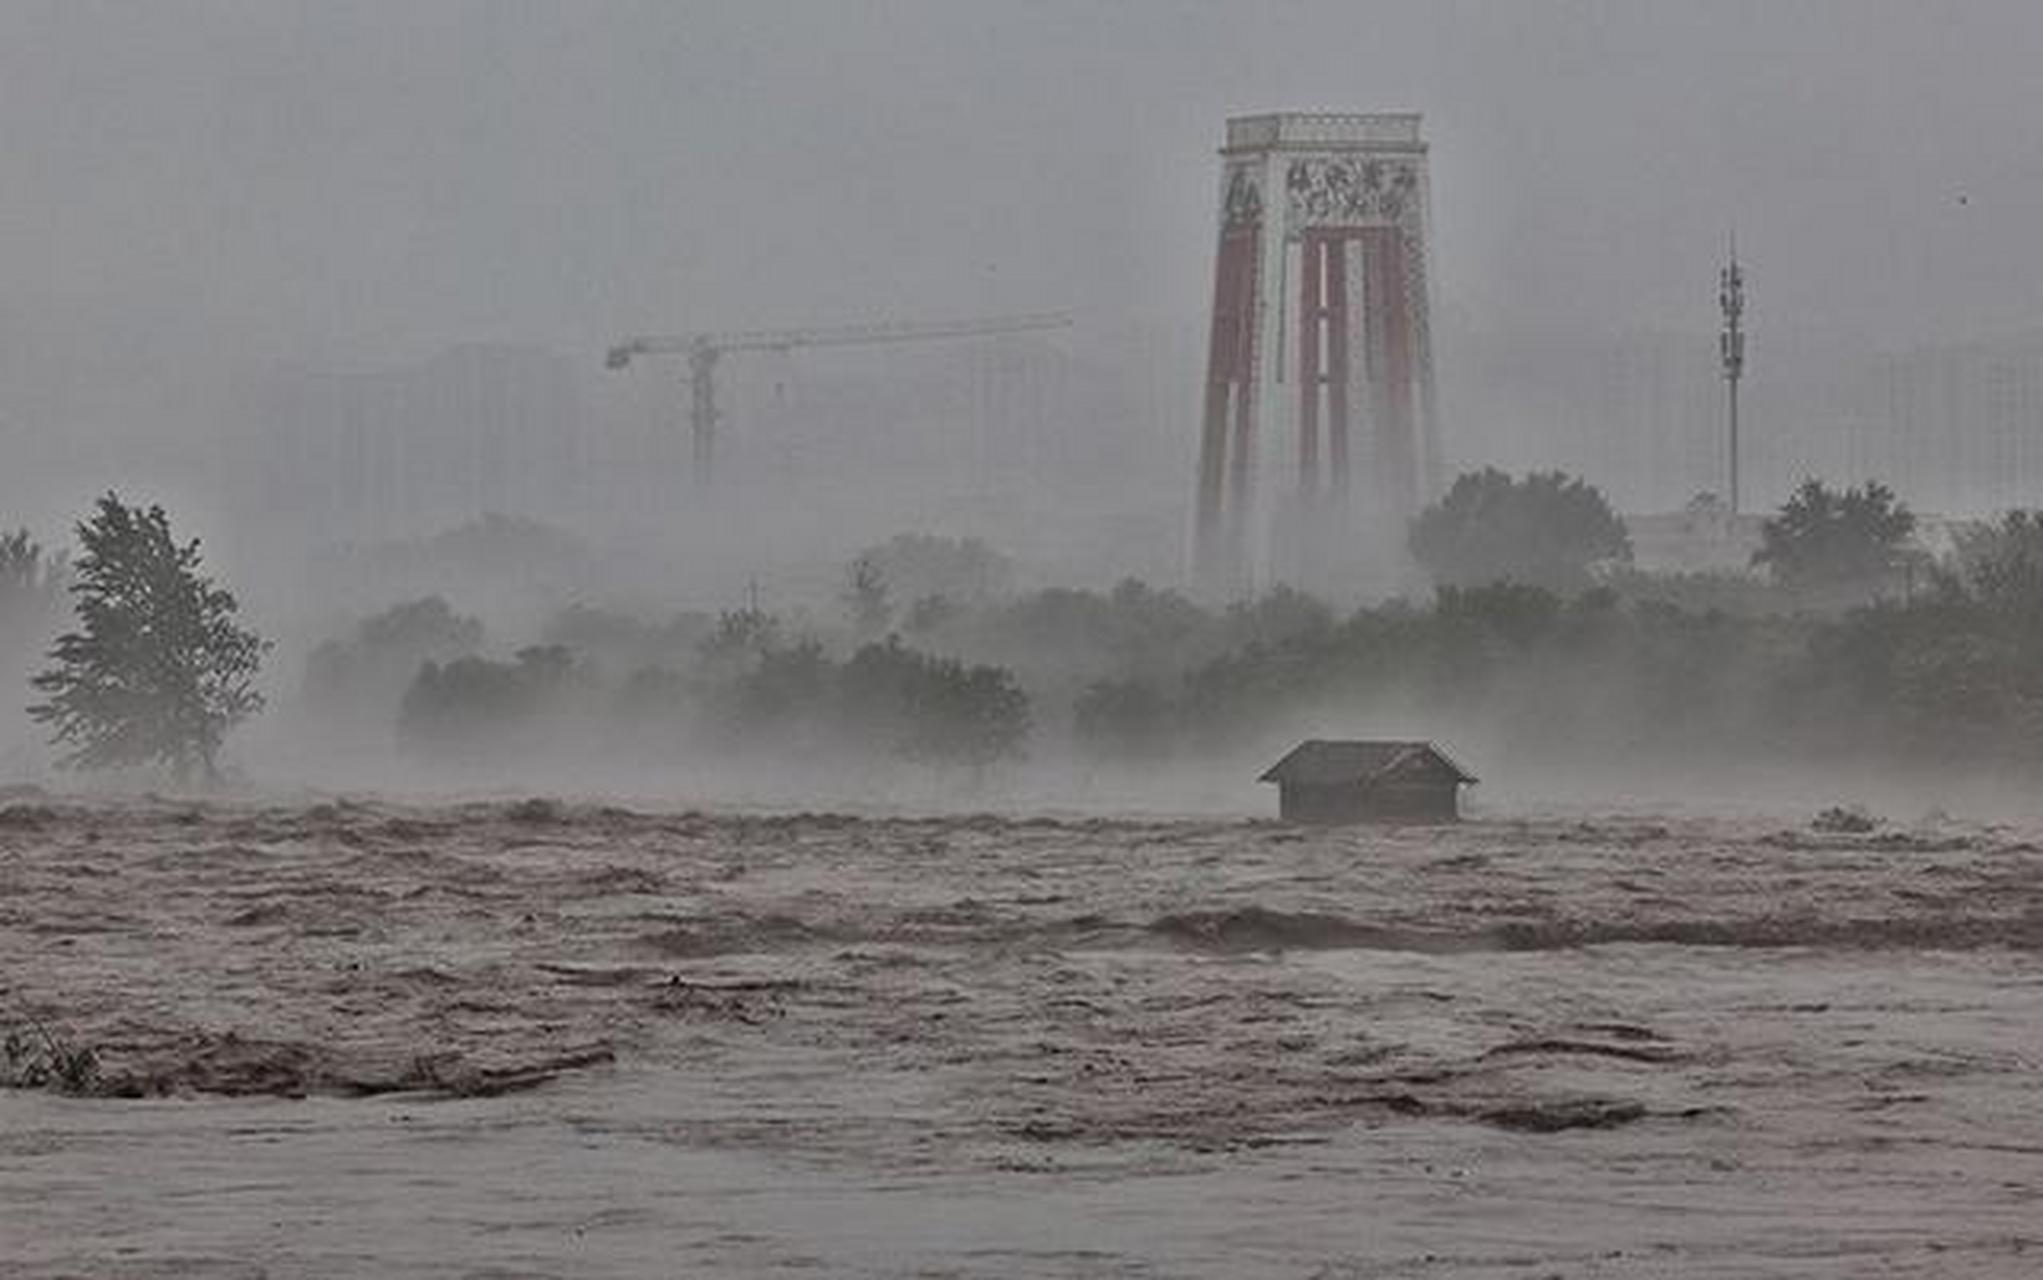 牡丹江发生2023年第1号洪水,房屋被大水冲走  牡丹江洪水已形成,致多